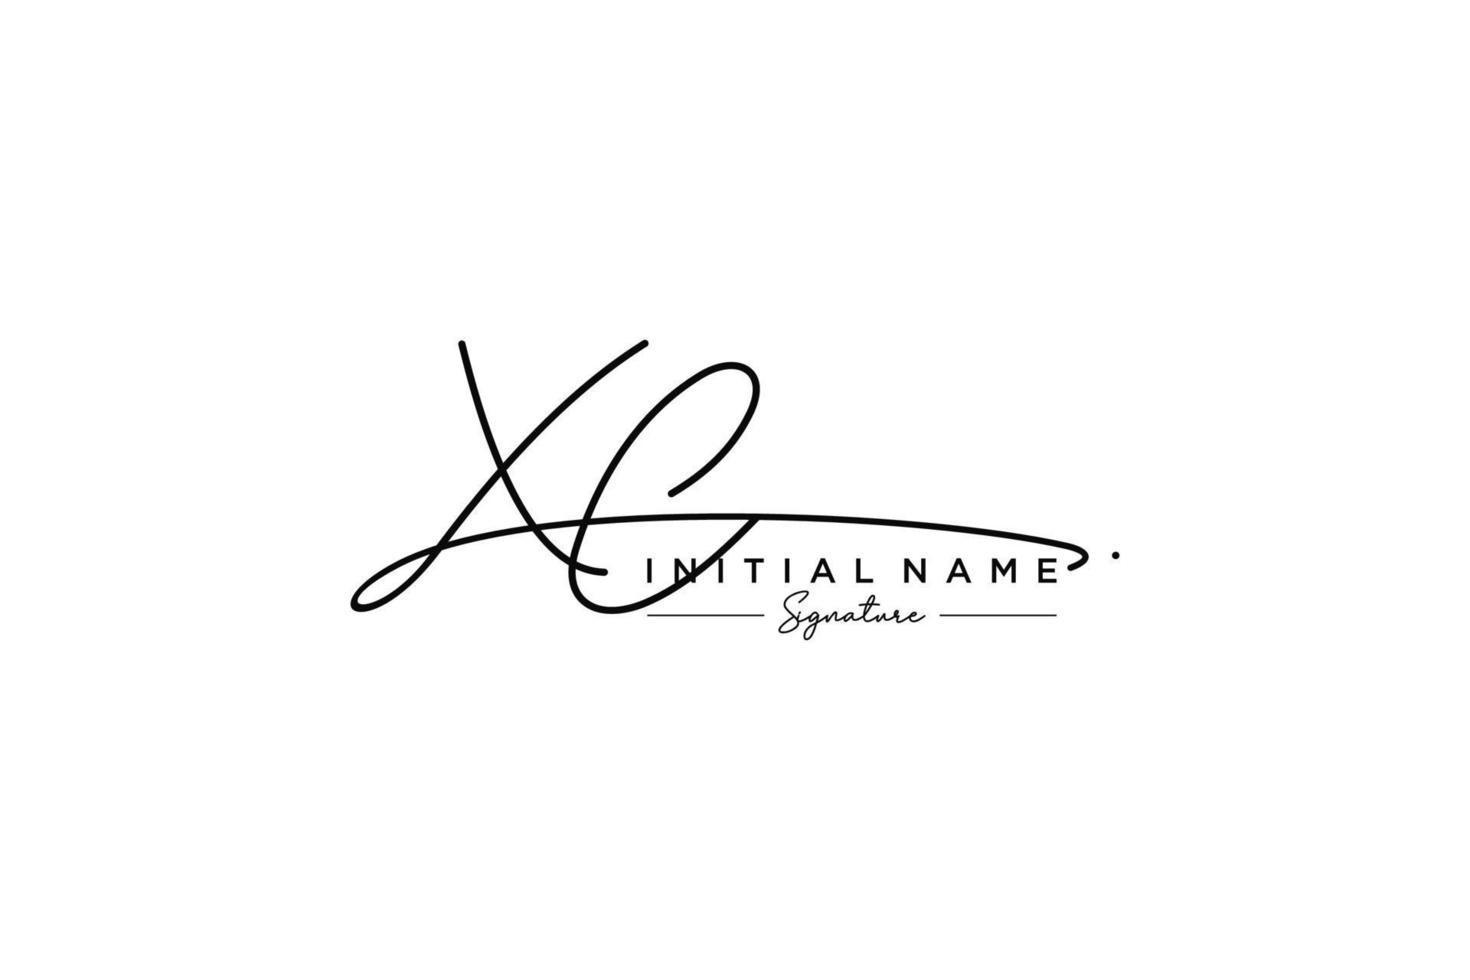 vector de plantilla de logotipo de firma xc inicial. ilustración de vector de letras de caligrafía dibujada a mano.